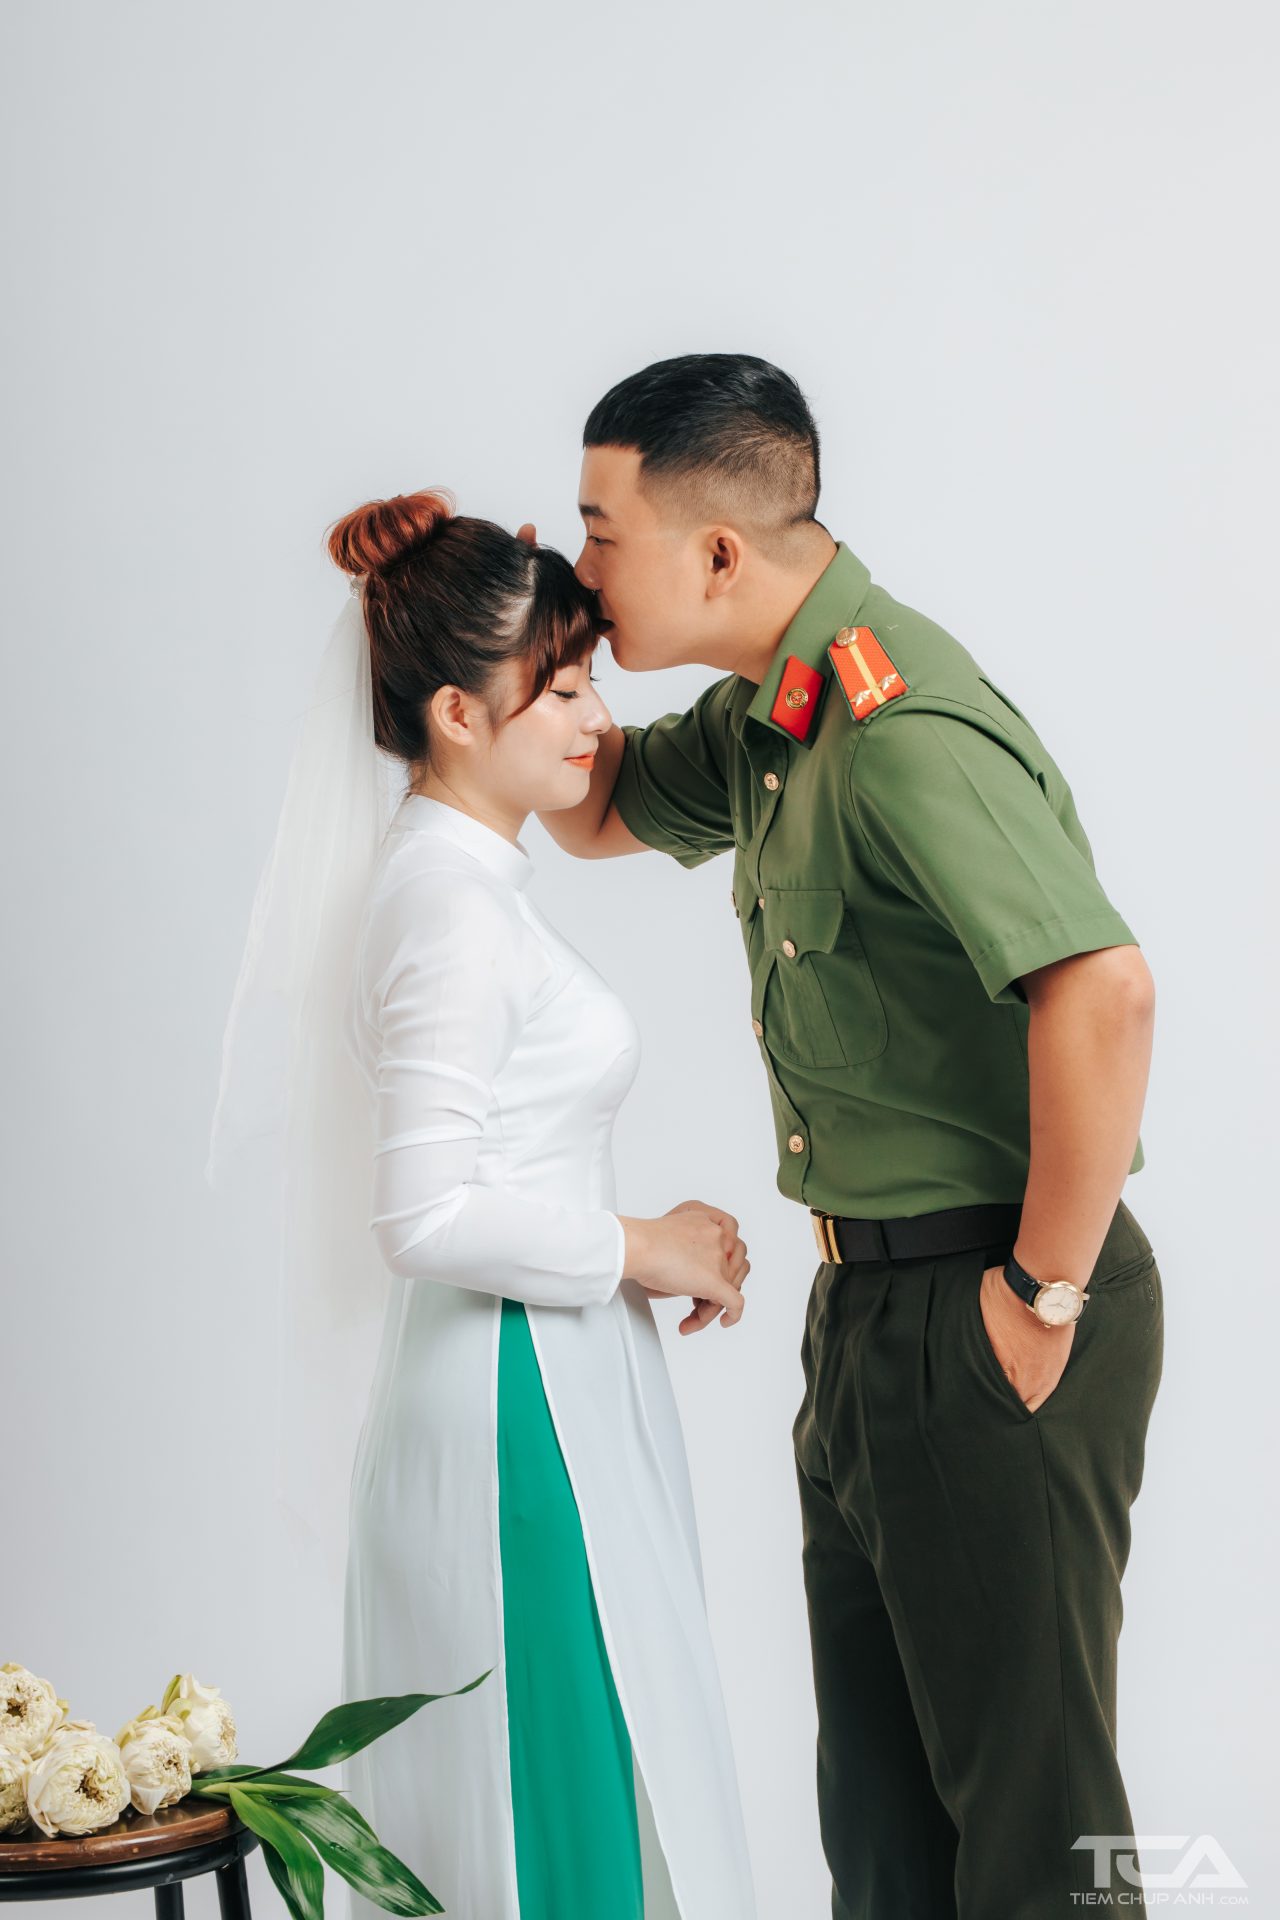 Một hình ảnh đầy màu sắc, tình cảm và lãng mạn trong bộ ảnh cưới với chiếc quân phục như tấm chắn bảo vệ cho tình yêu của cặp đôi. Hãy cùng chia sẻ kiệt tác nghệ thuật này.